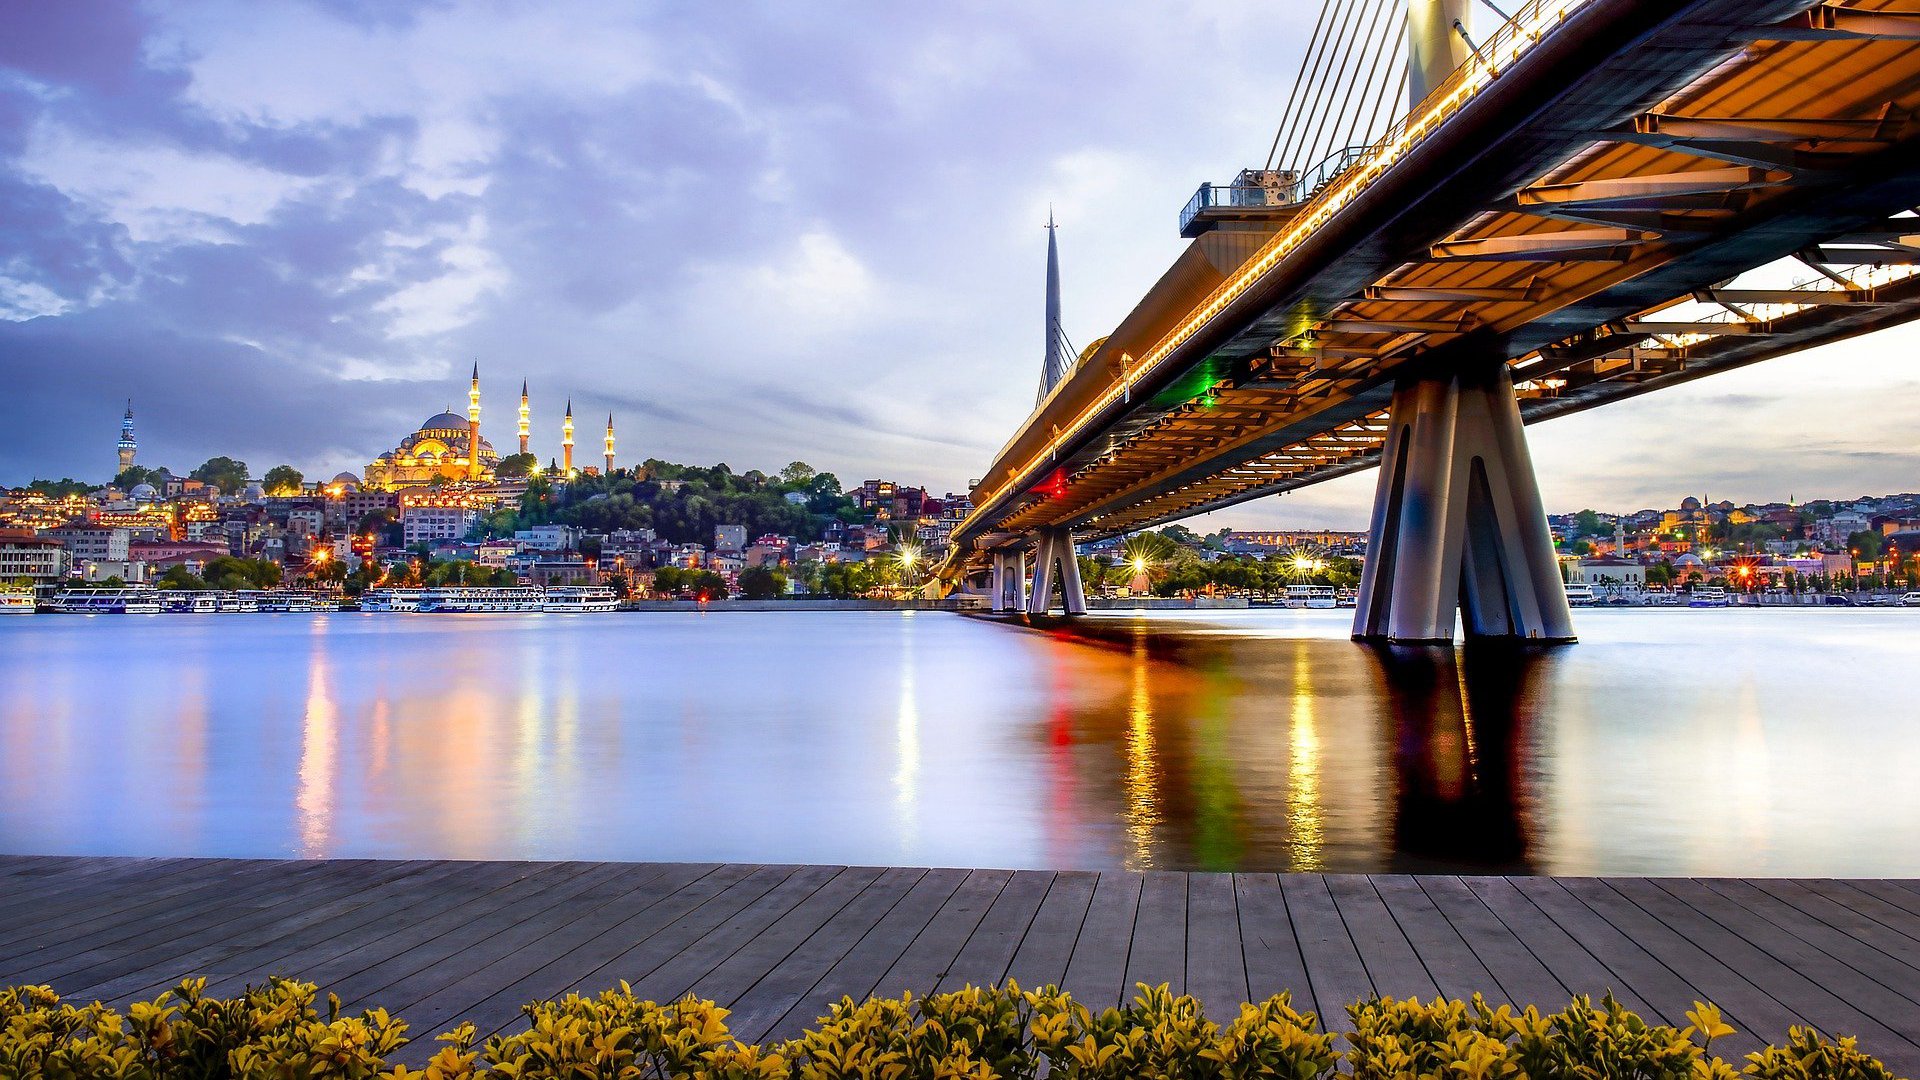 城市 <span style='color:red;'>大桥</span> 桥梁 城市风光 灯火唯美桌面壁纸图片 伊斯坦布尔